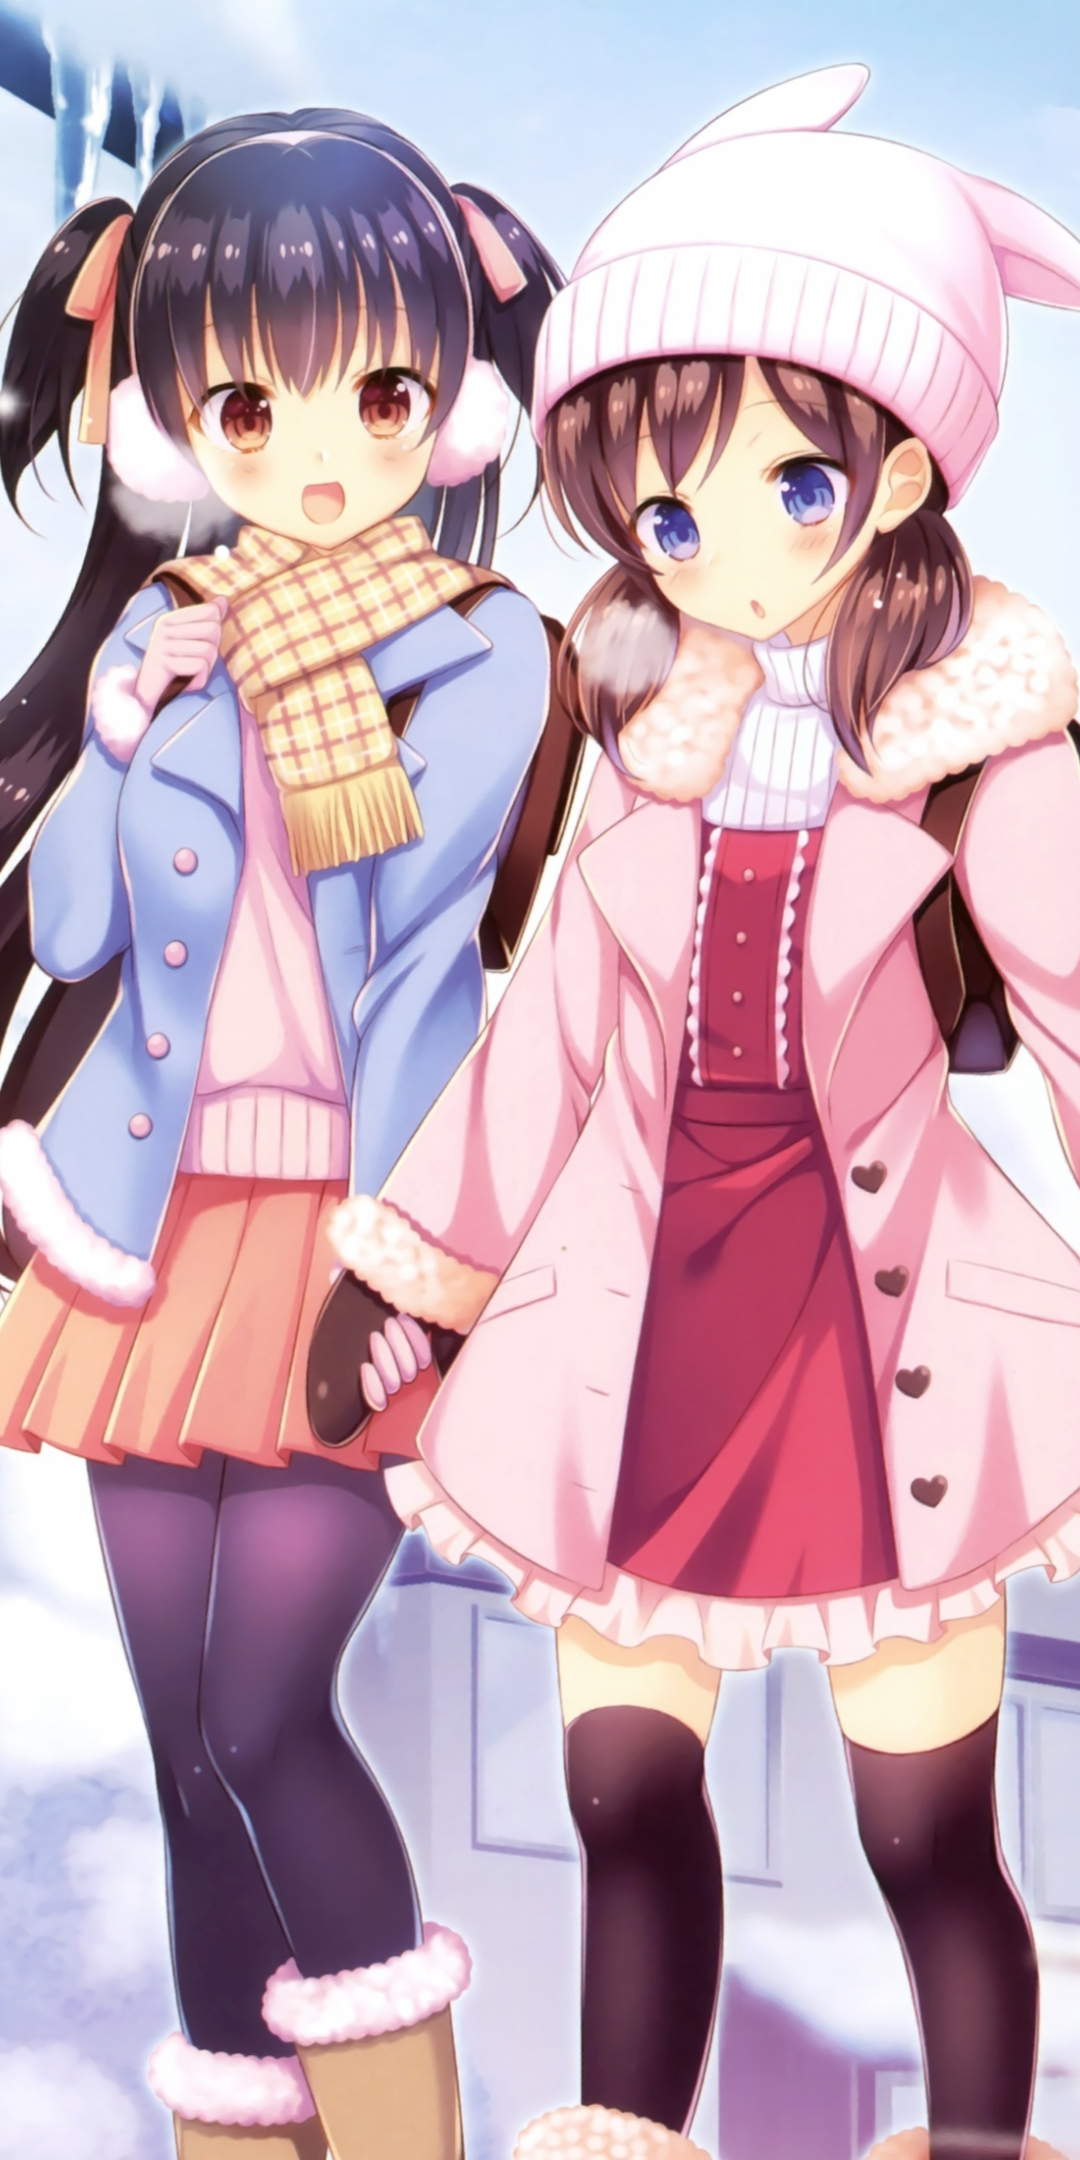 Winter, outdoor, girls, anime, friends, 1080x2160 wallpaper